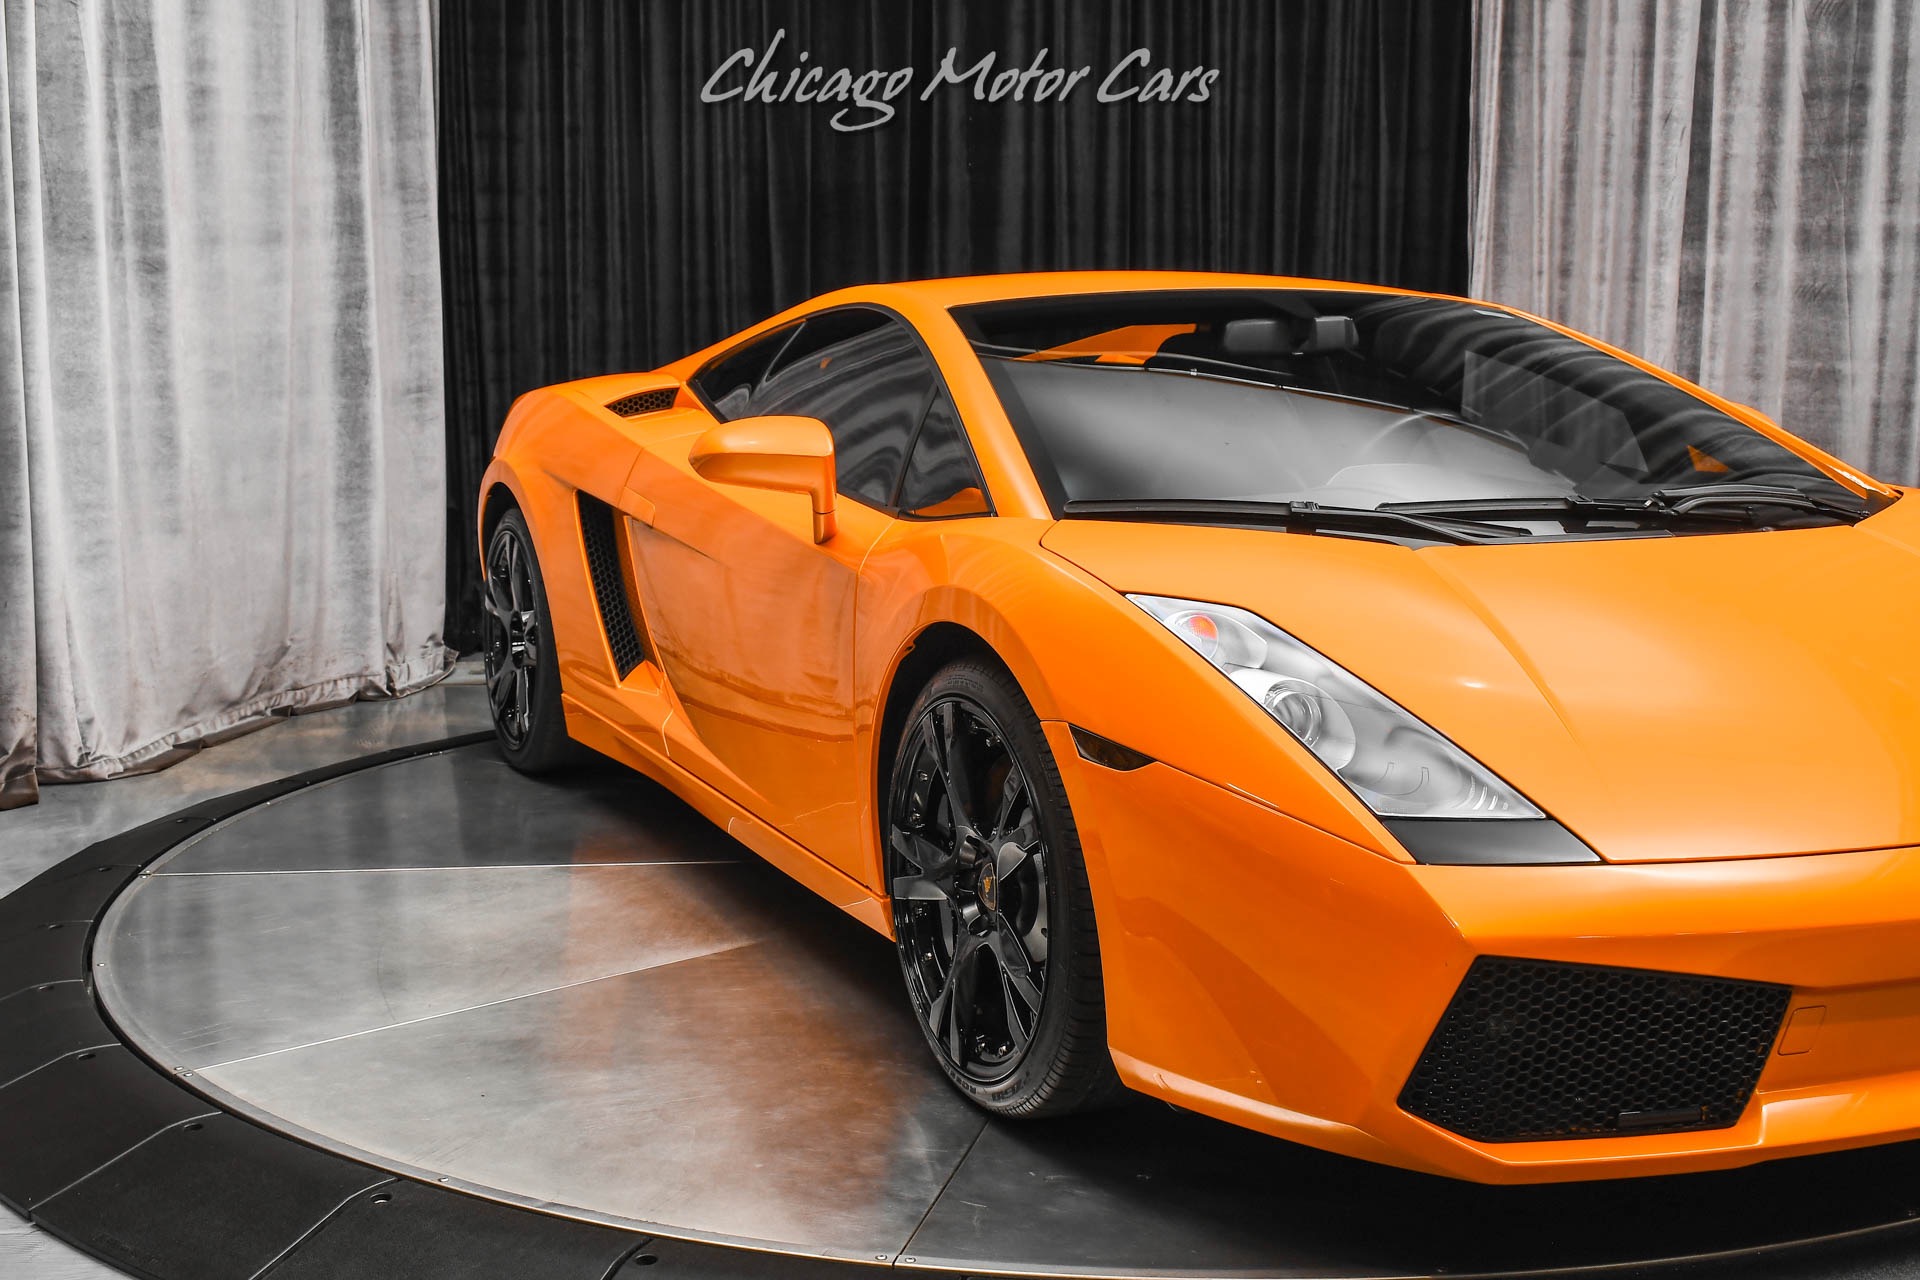 Used-2007-Lamborghini-Gallardo-Coupe-Arancio-Borealis-ONLY-11K-Miles-E-Gear-LOADED-with-Options